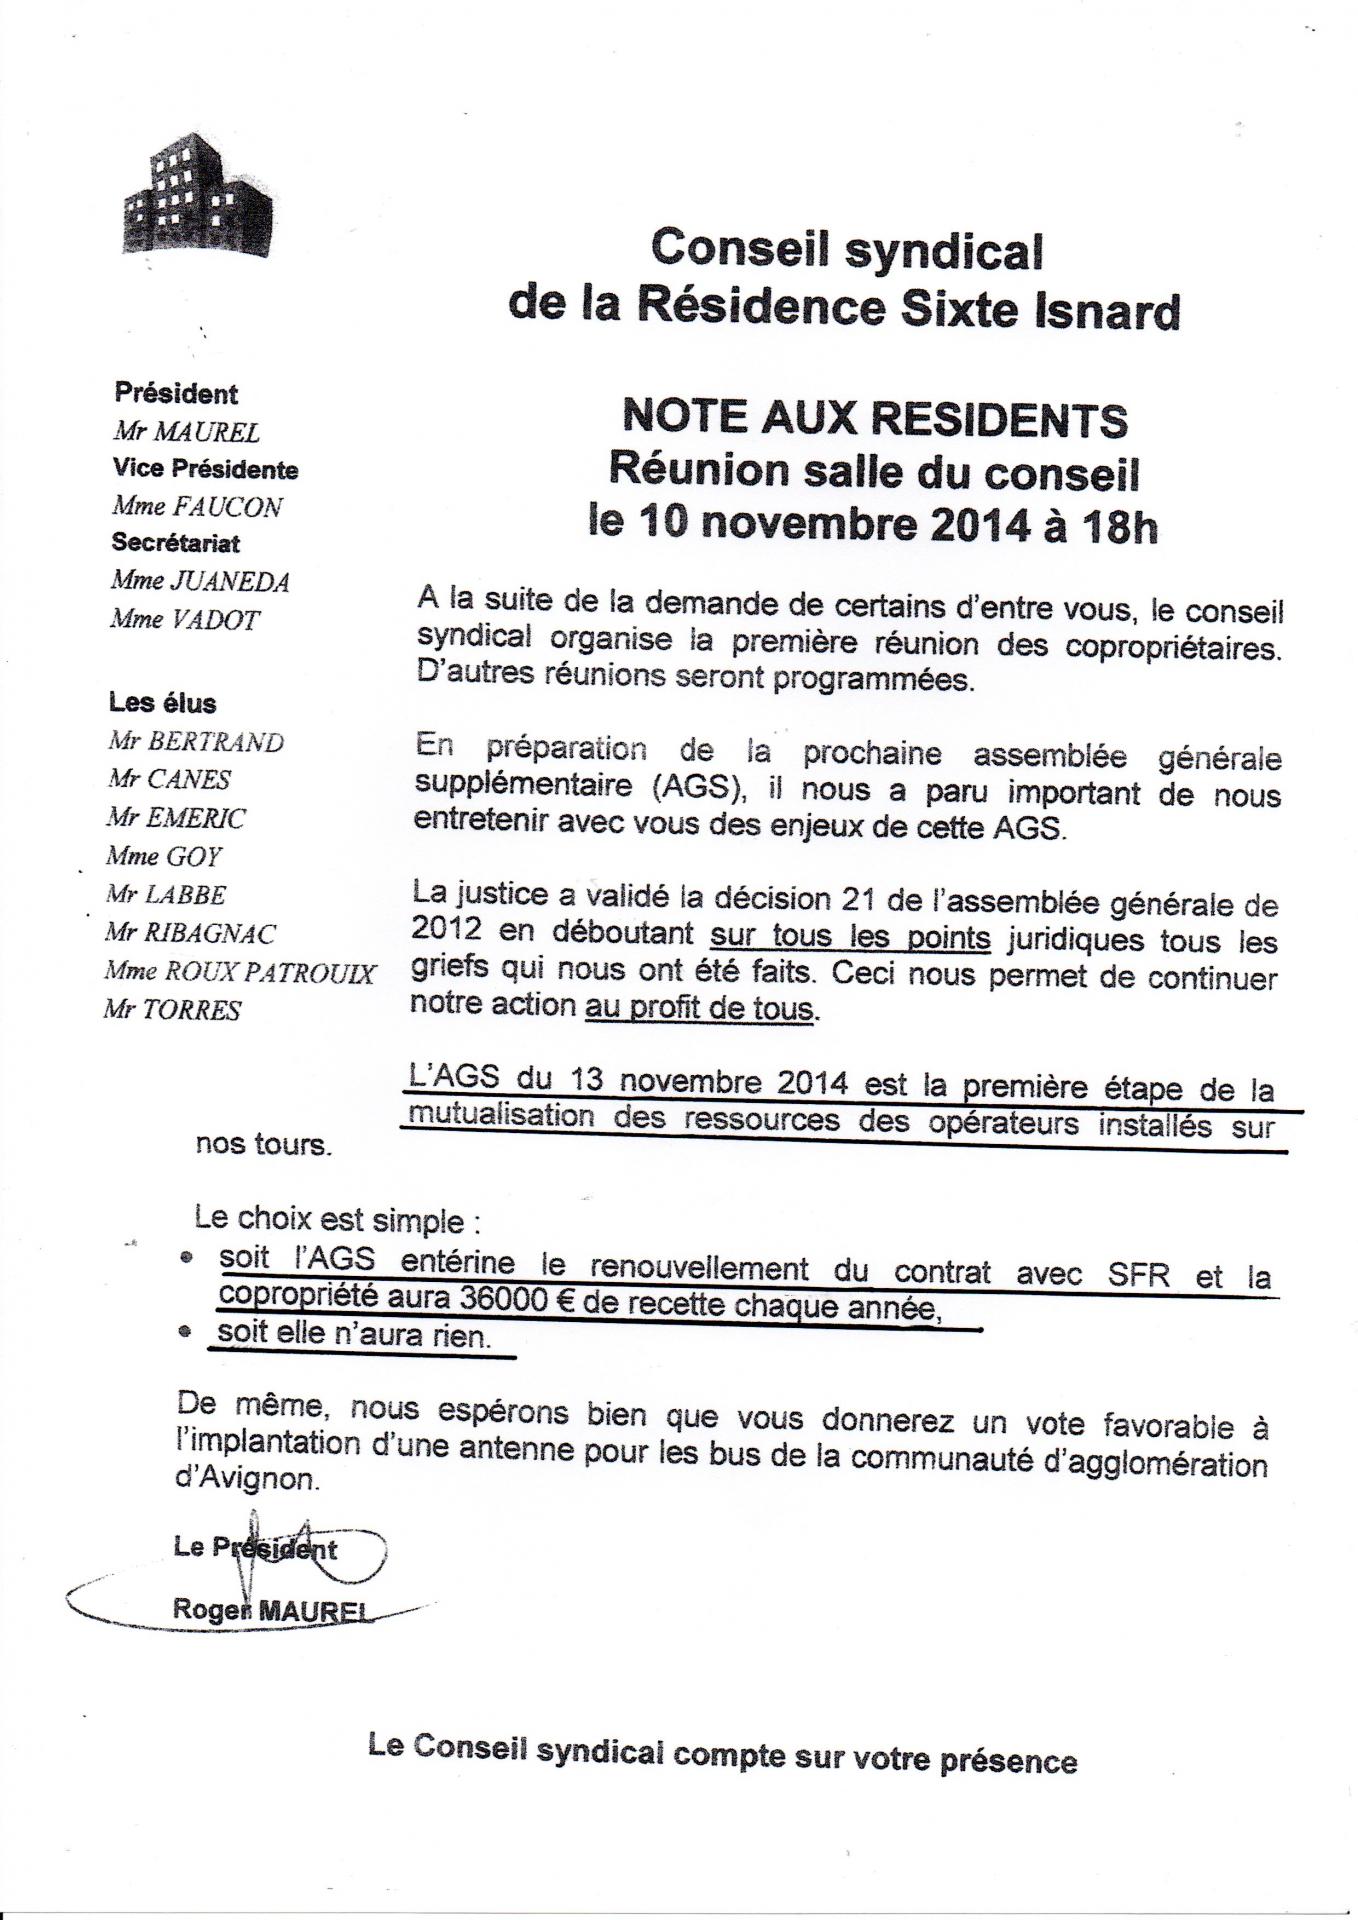 Réunion destinée a faire voter oui au bail SFR 10 11 2014